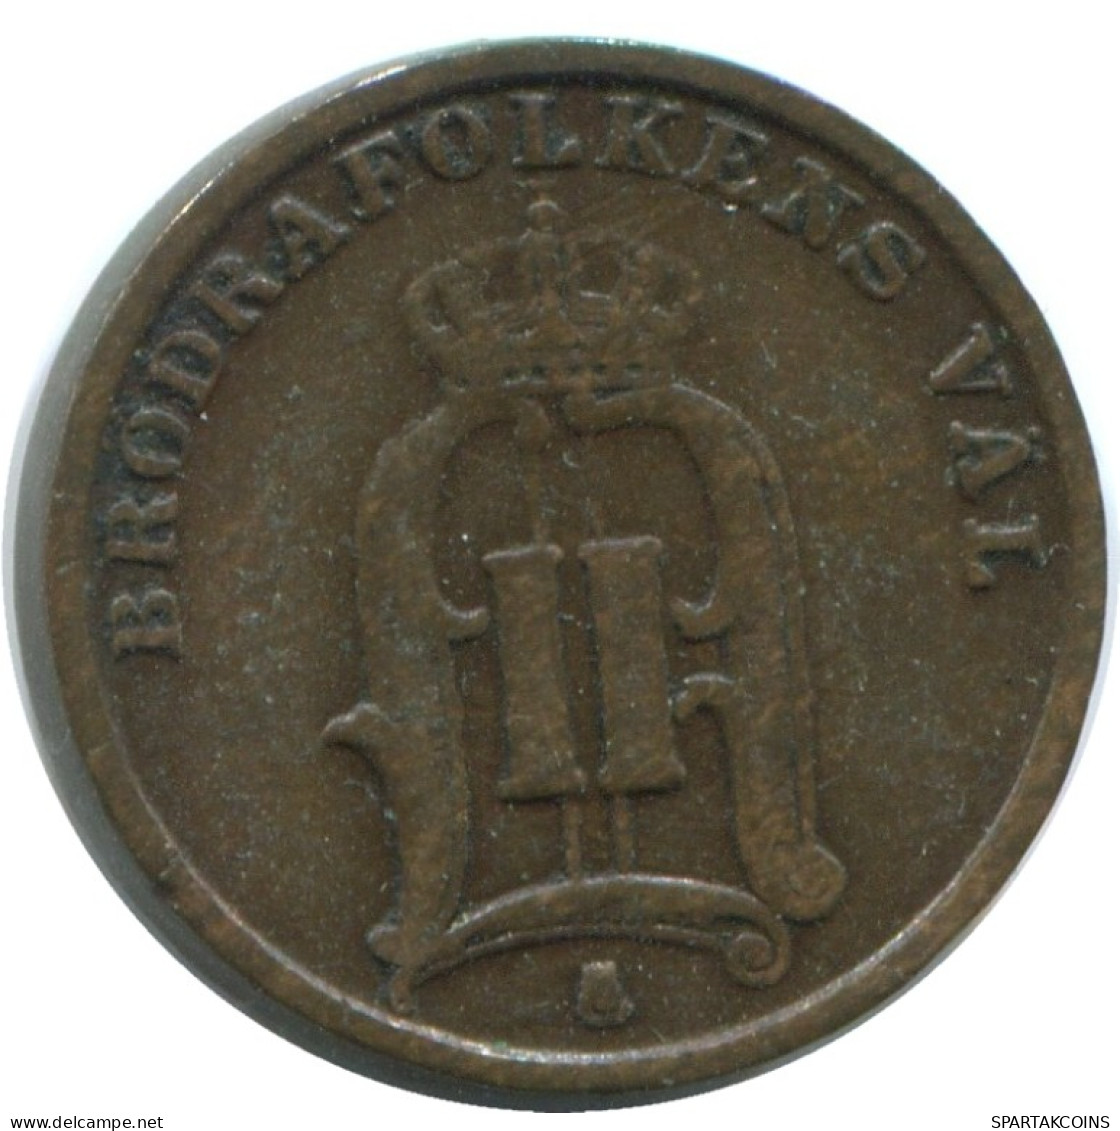 1 ORE 1896 SUECIA SWEDEN Moneda #AD233.2.E.A - Suède